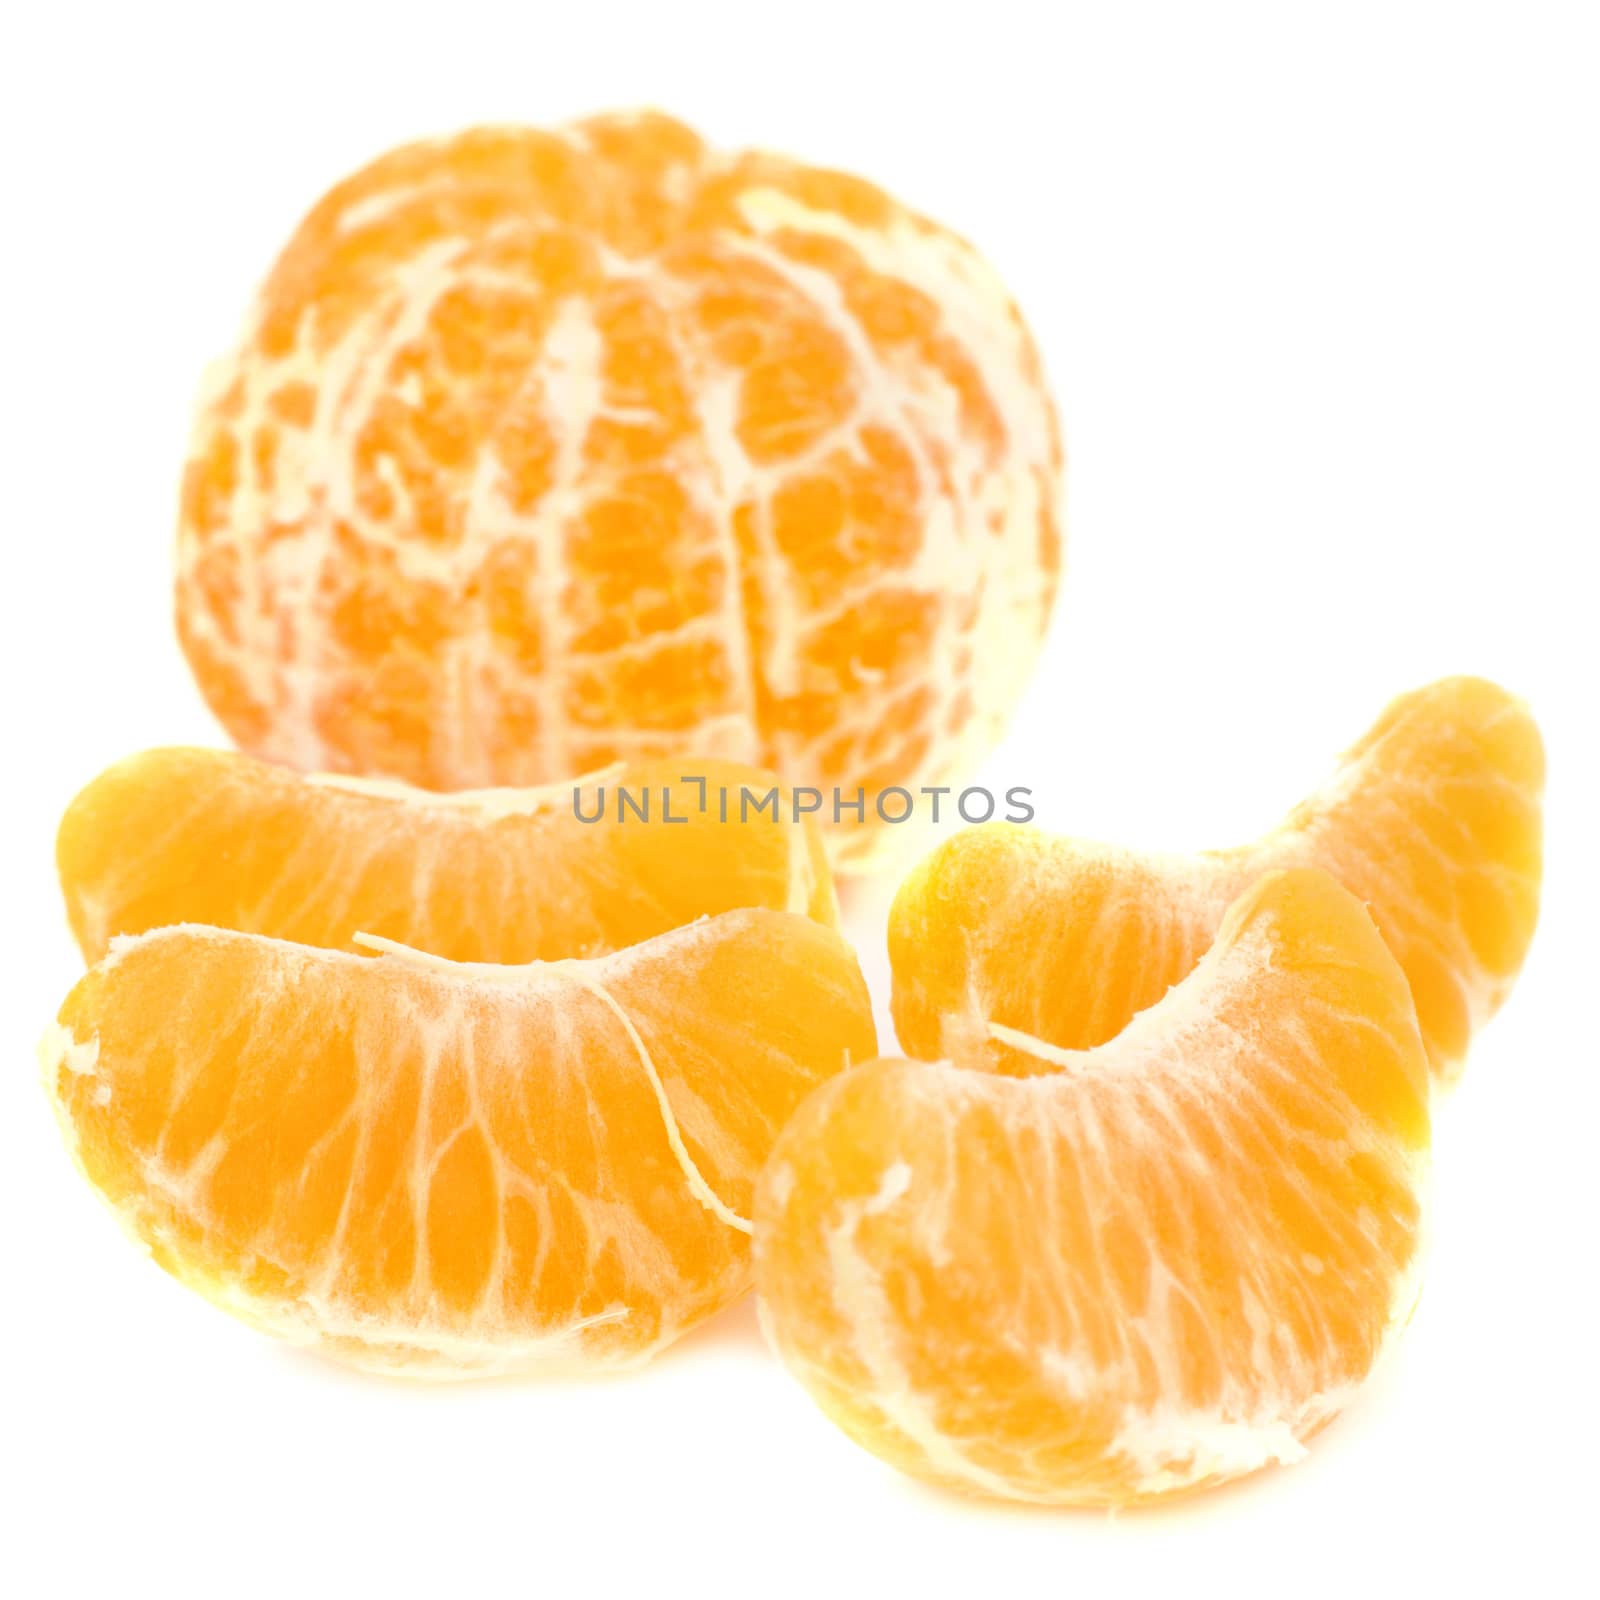 Orange peeled mandarin and slices without skin isolated on white background